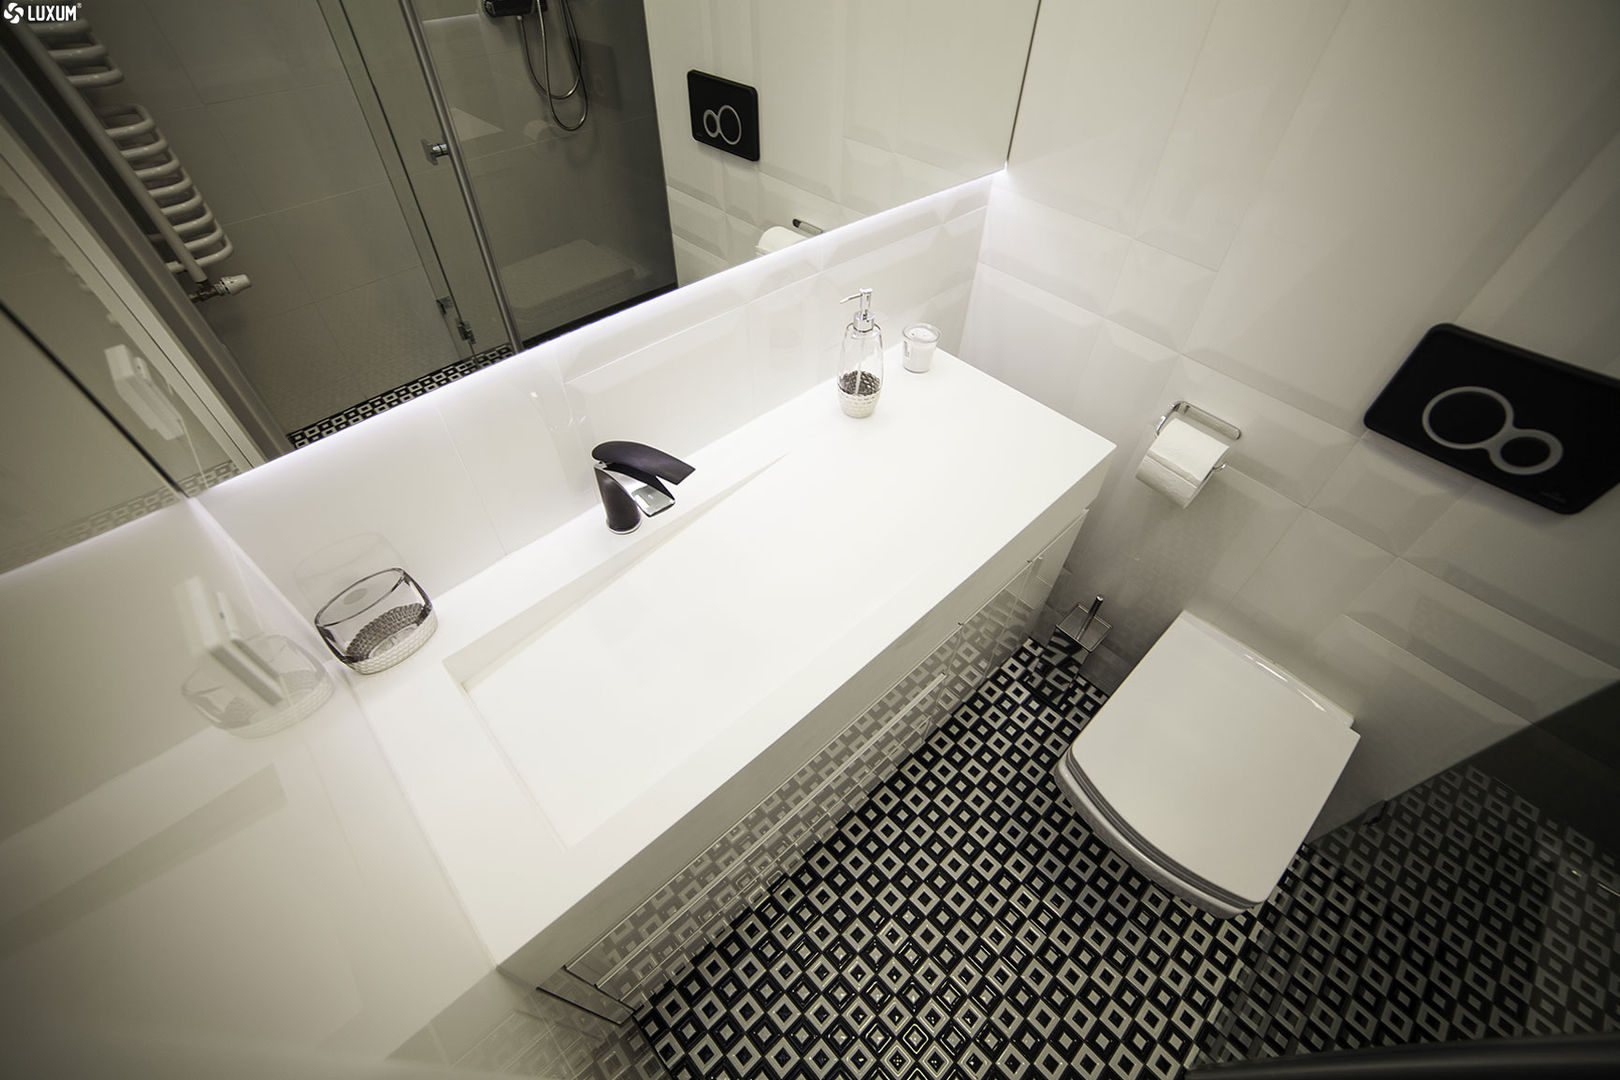 Prostokątna umywalka z odpływem liniowym od Luxum. , Luxum Luxum Skandynawska łazienka luxum,umywalka,łazienka,pomysły,architektura,wnętrza,nietypowa umywalka,dizajn,design,odpływ liniowy,szafka łazienkowa,czarna bateria